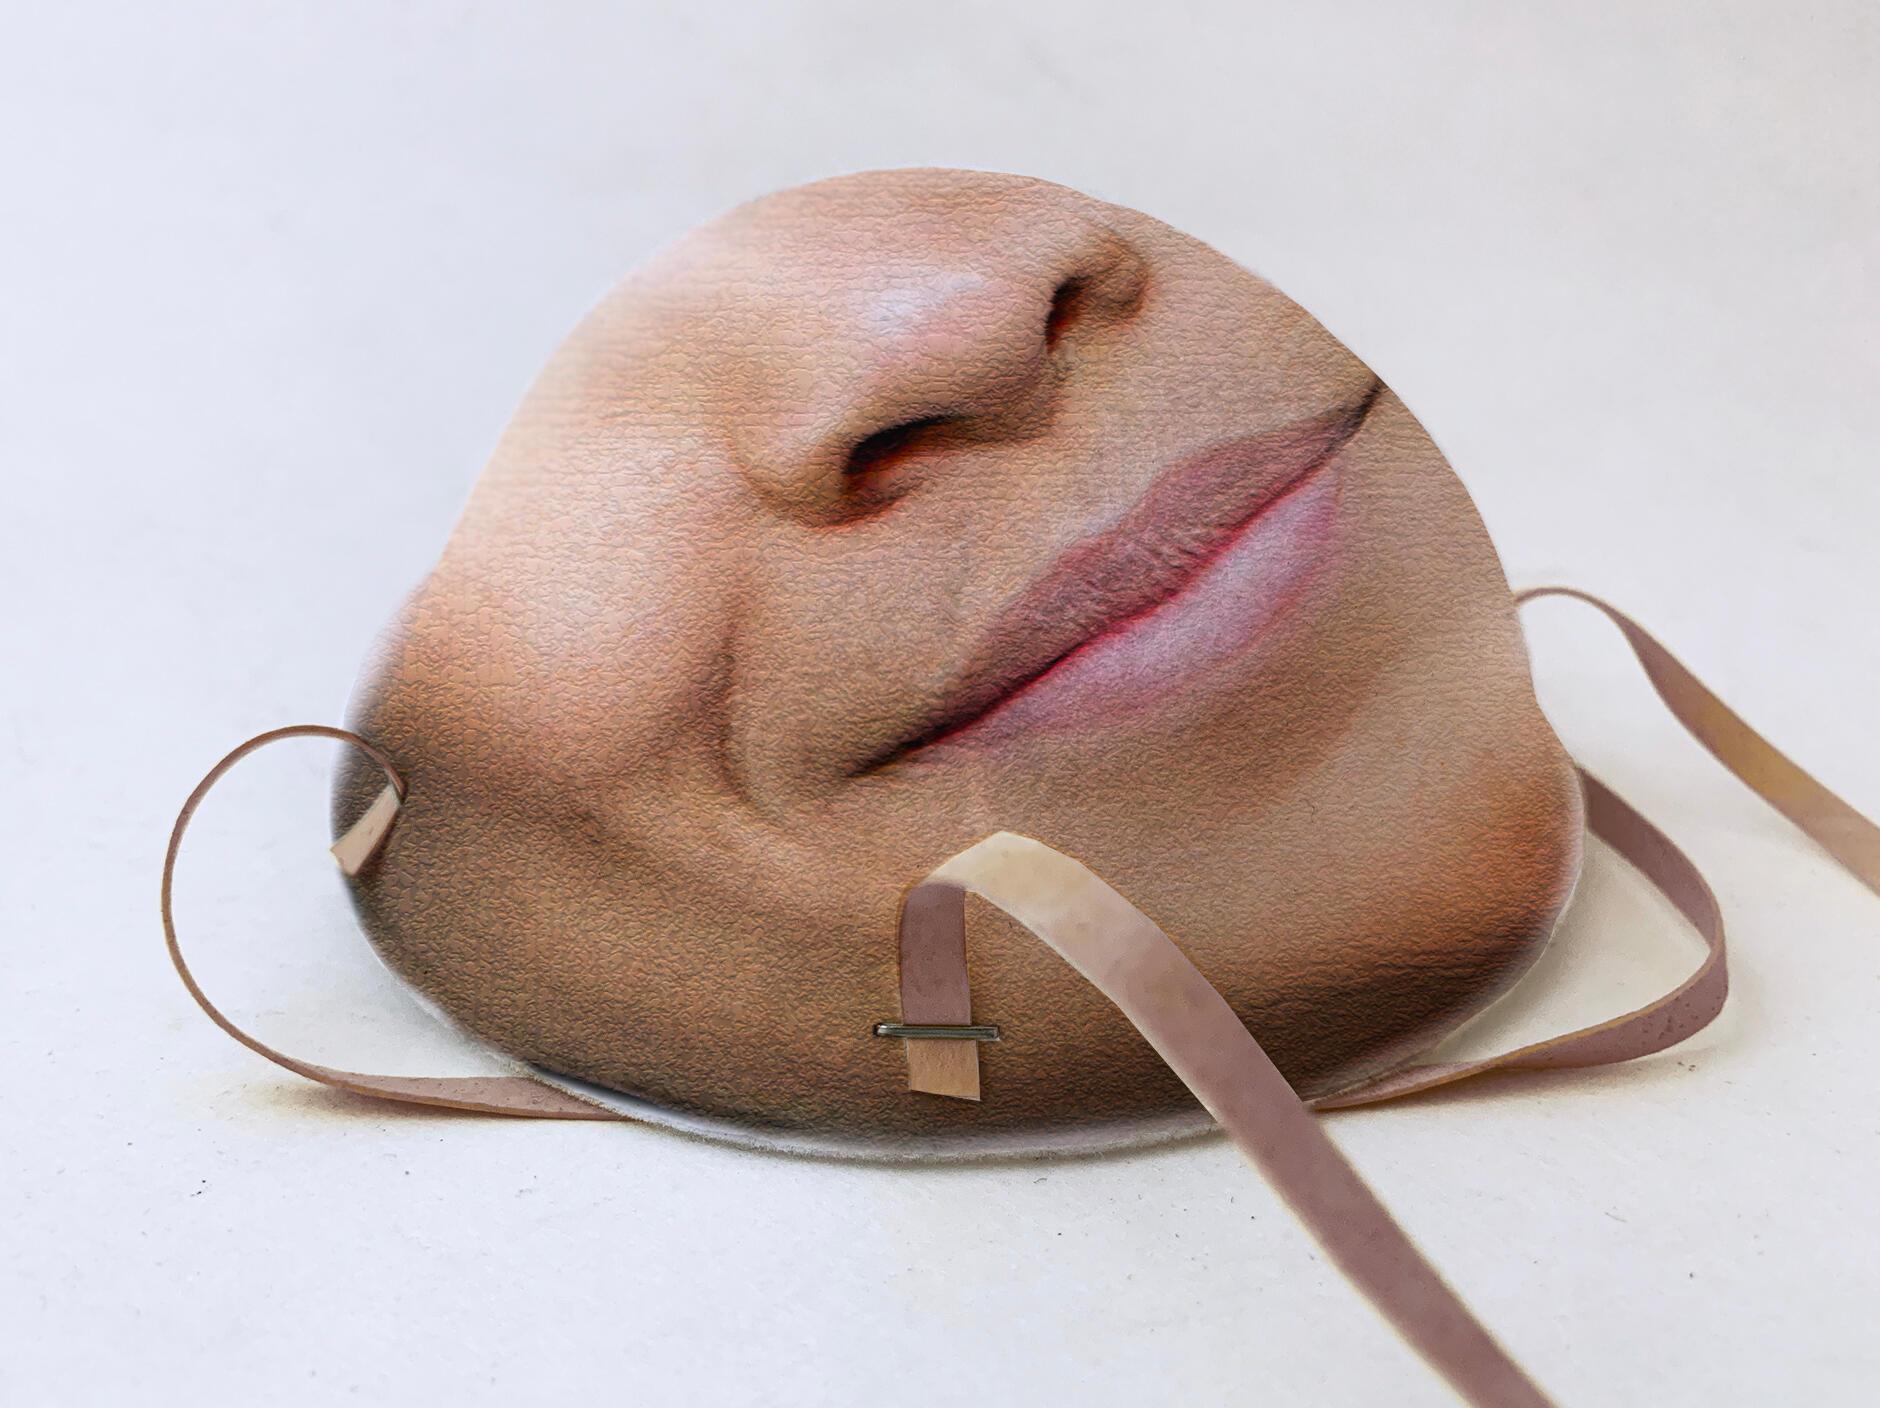     Uno de los problemas que enfrentan los usuarios de máscaras es que hacen dispositivos de reconocimiento facial smartphones - como AppleID Face - inútil